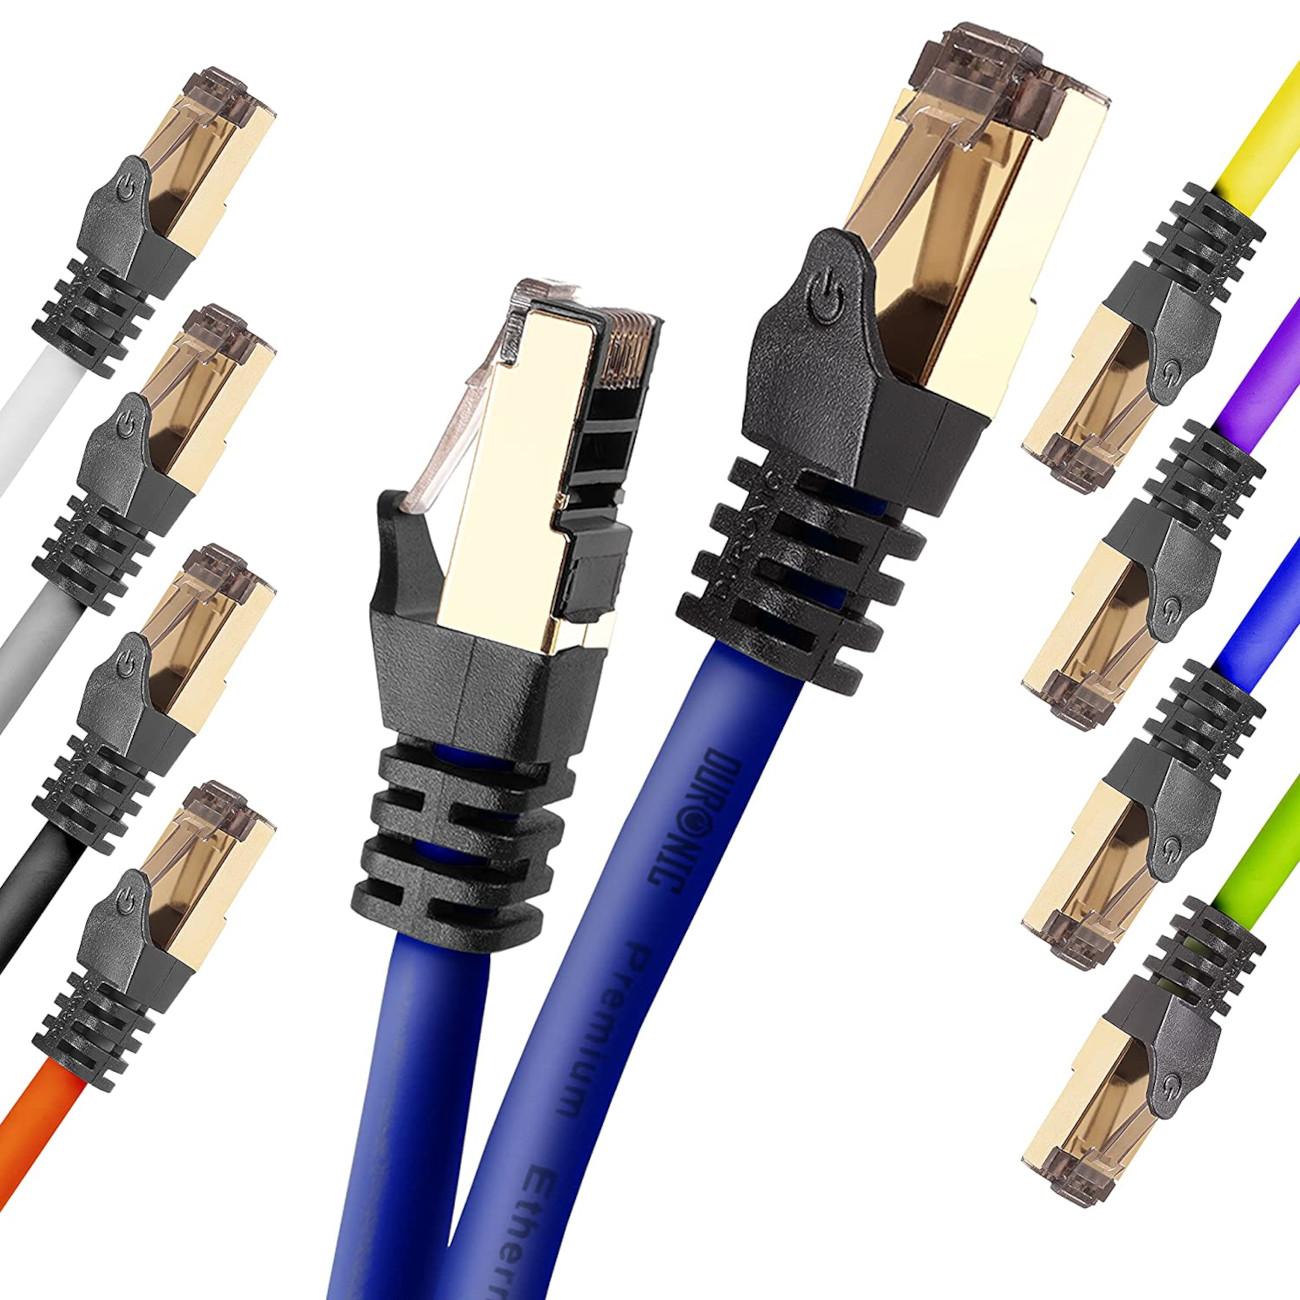 DURONIC CAT8 Lankabel | 5.000 | Router MB/s 10 und BE Netzwerkkabel, RJ45 für | Patchkabel m Ethernetkabel Konsole, 10m